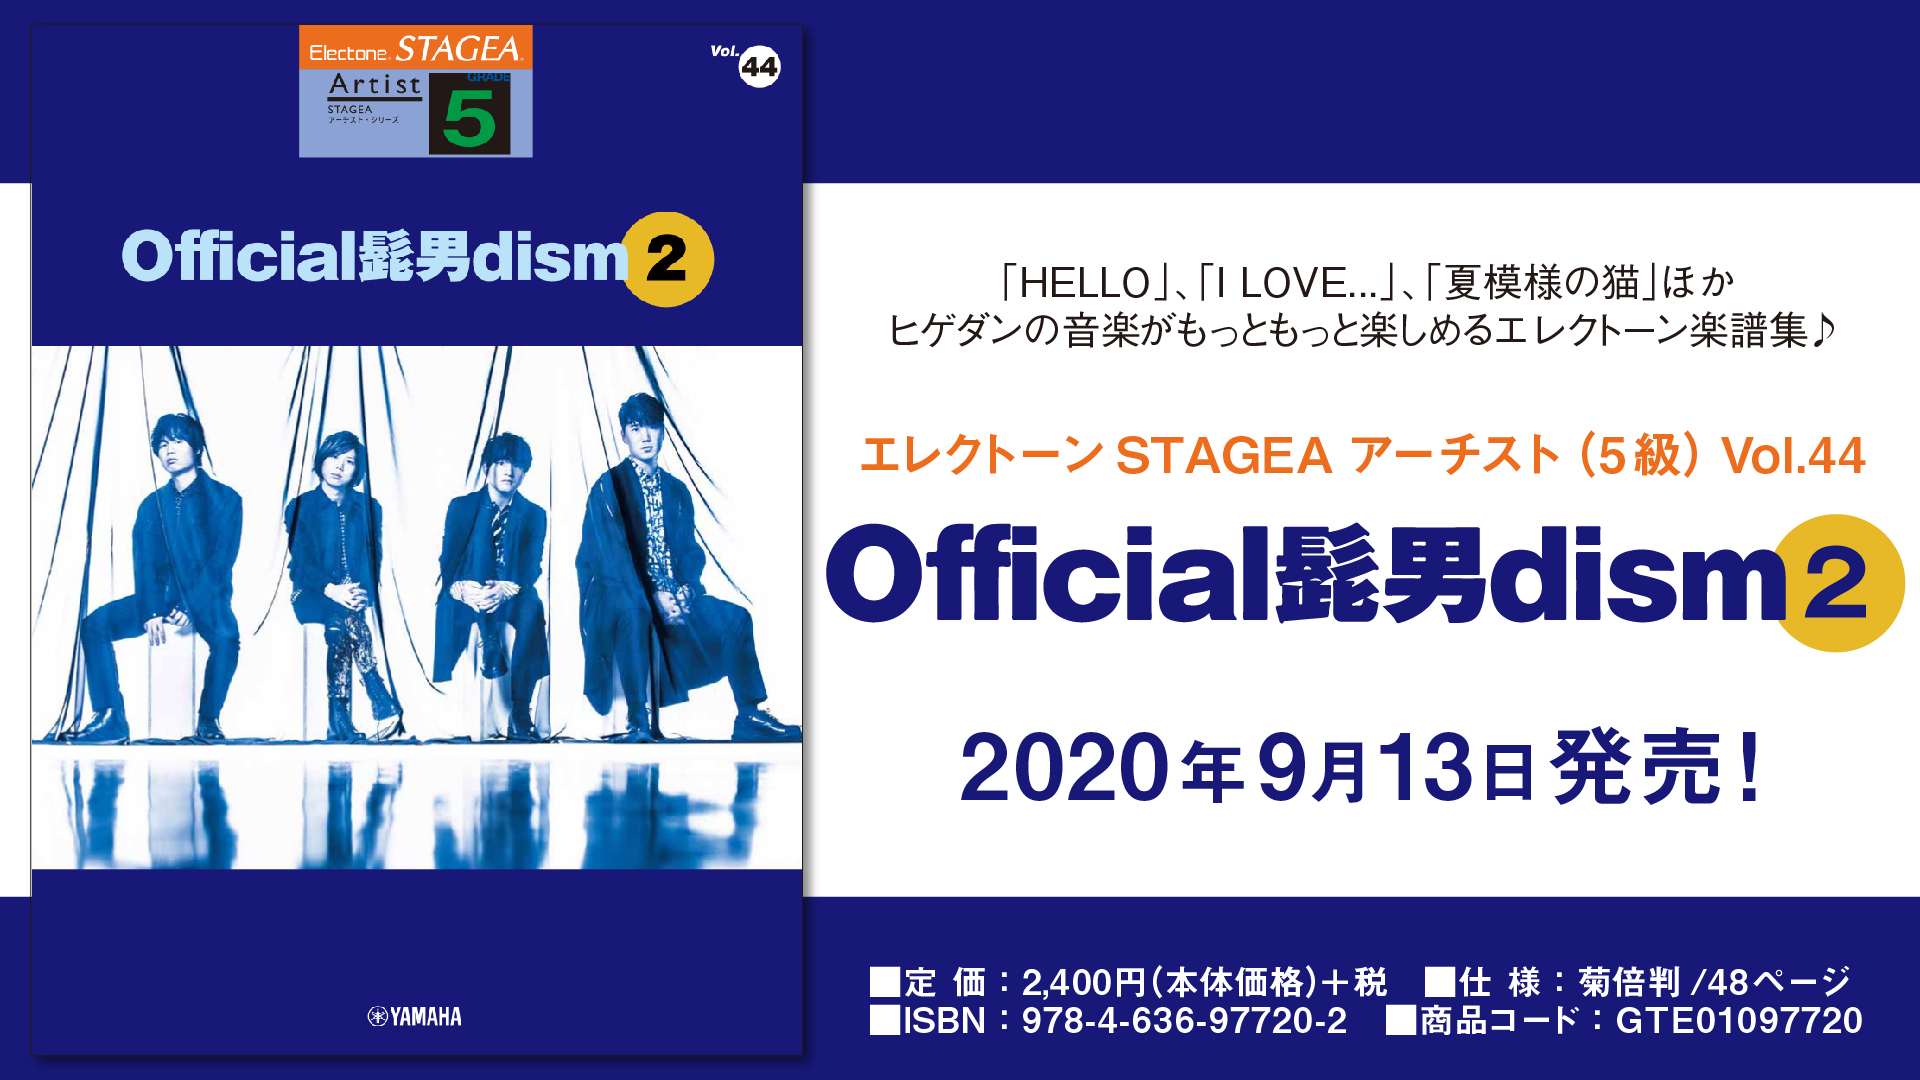 エレクトーン Stagea アーチスト 5級 Vol 44 Official髭男dism 2 9月13日発売 Newscast